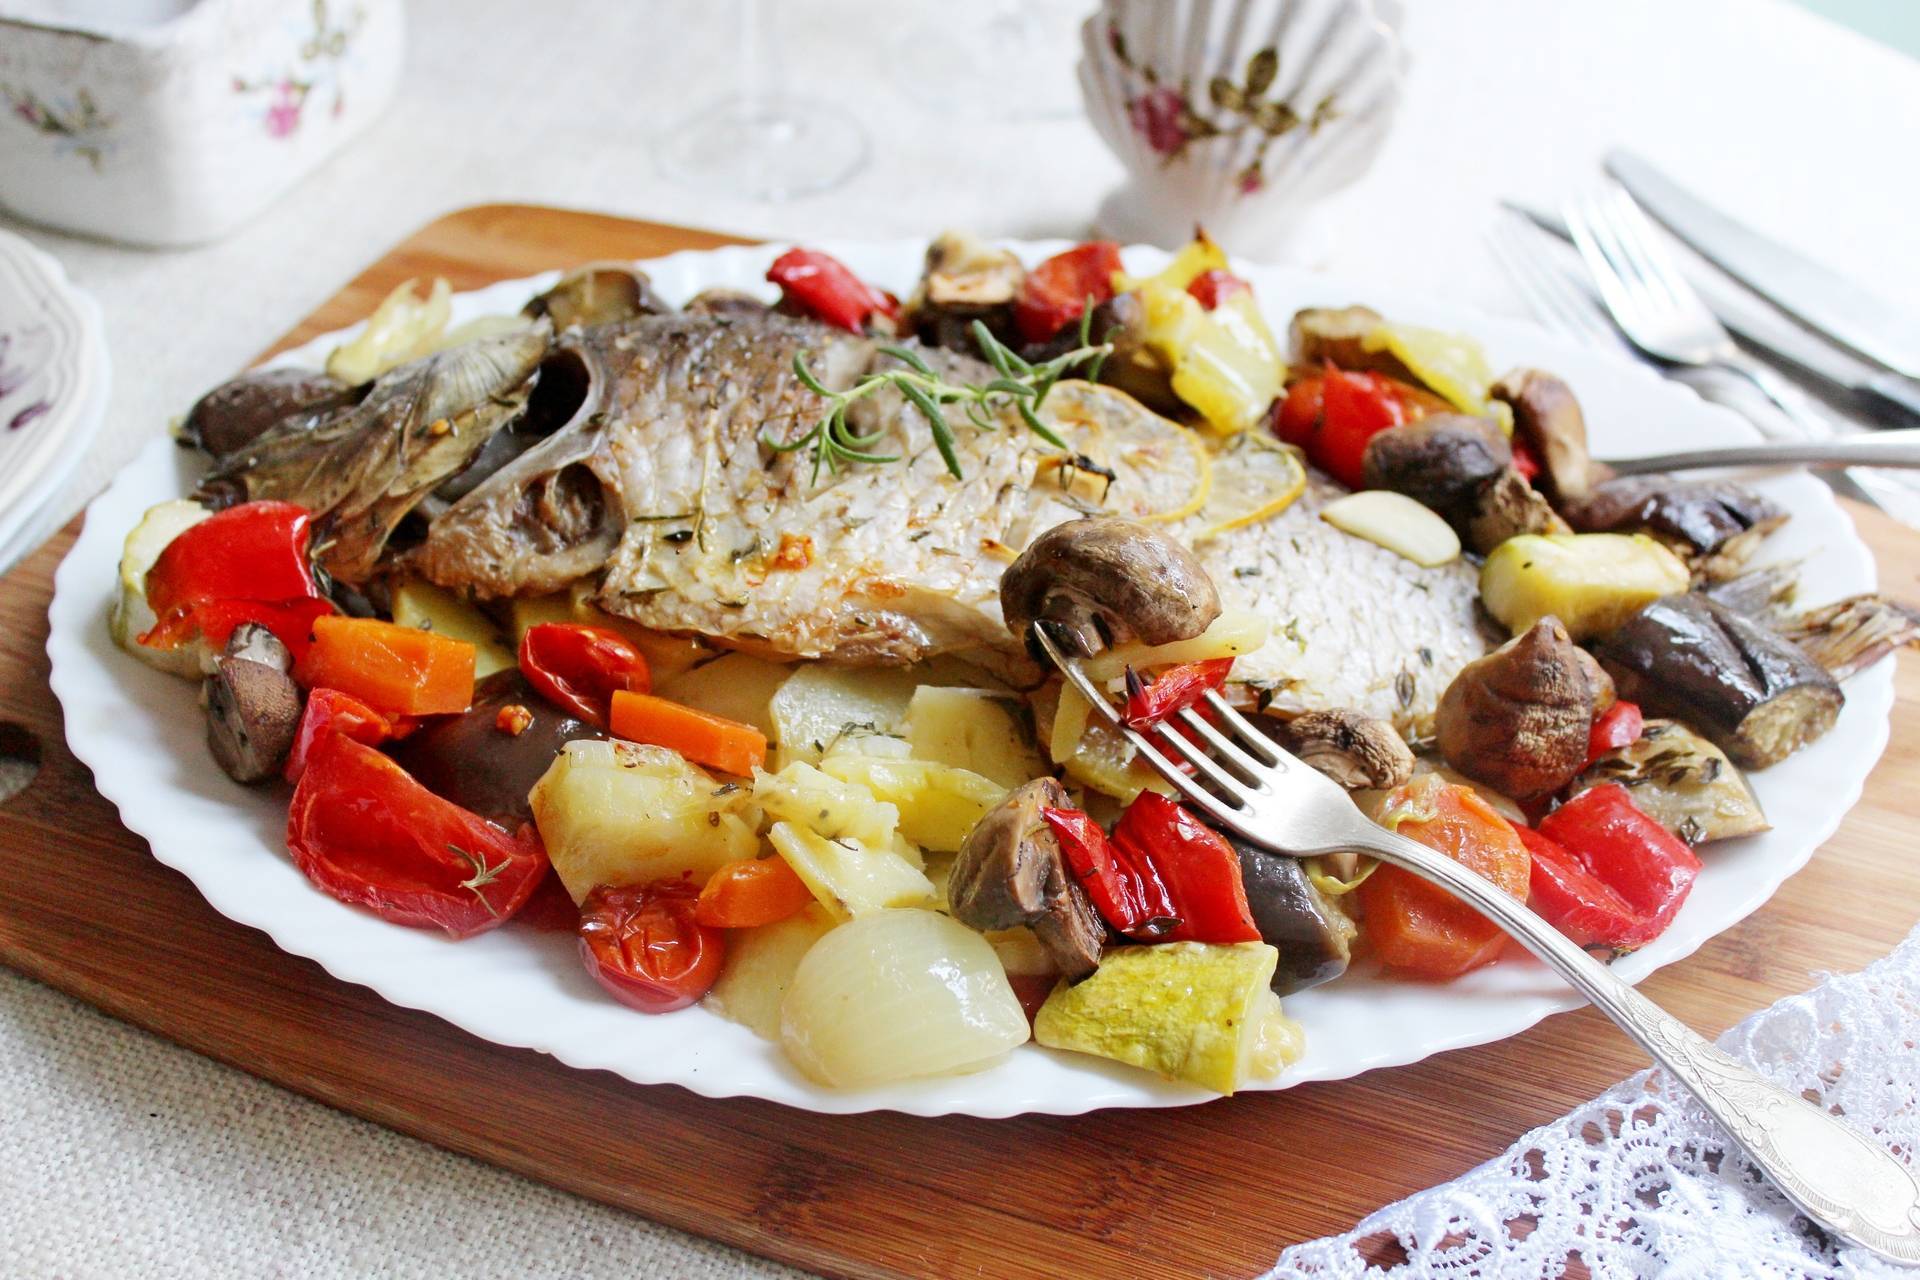 Рыба, запеченная в духовке - рецепт с фото. как вкусно приготовить целиком или кусочками